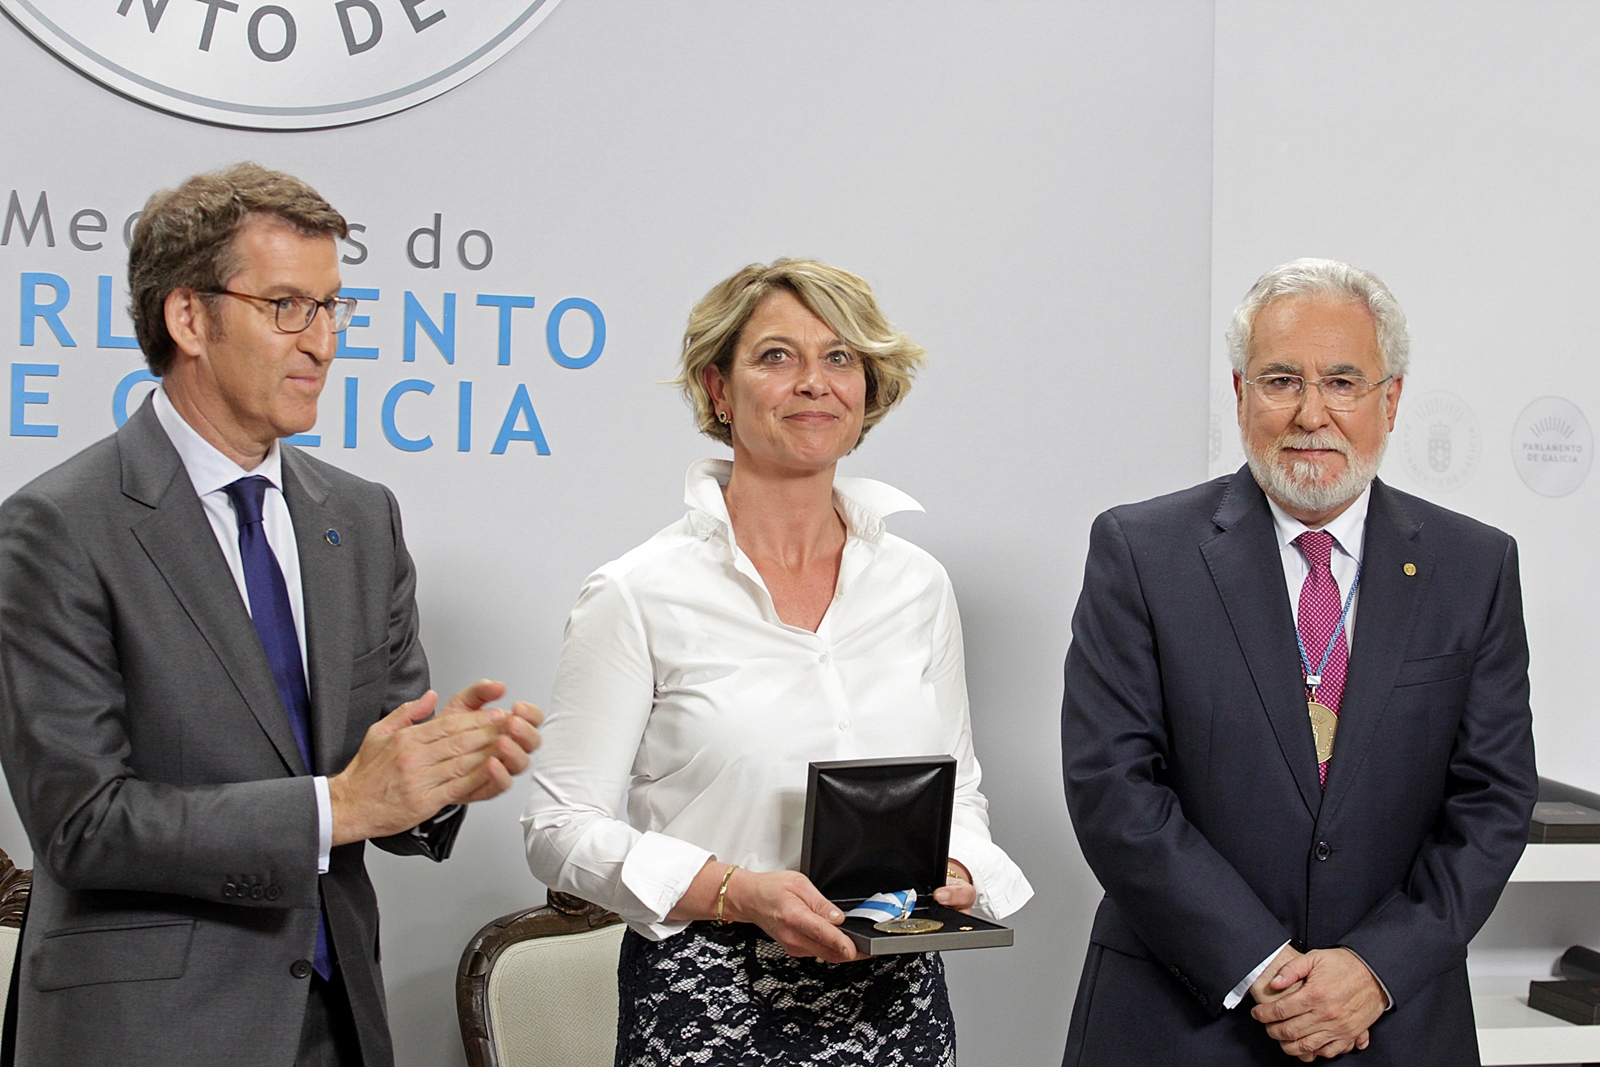 O Parlamento de Galicia entregou as súas Medallas á “Comisión dos 16”